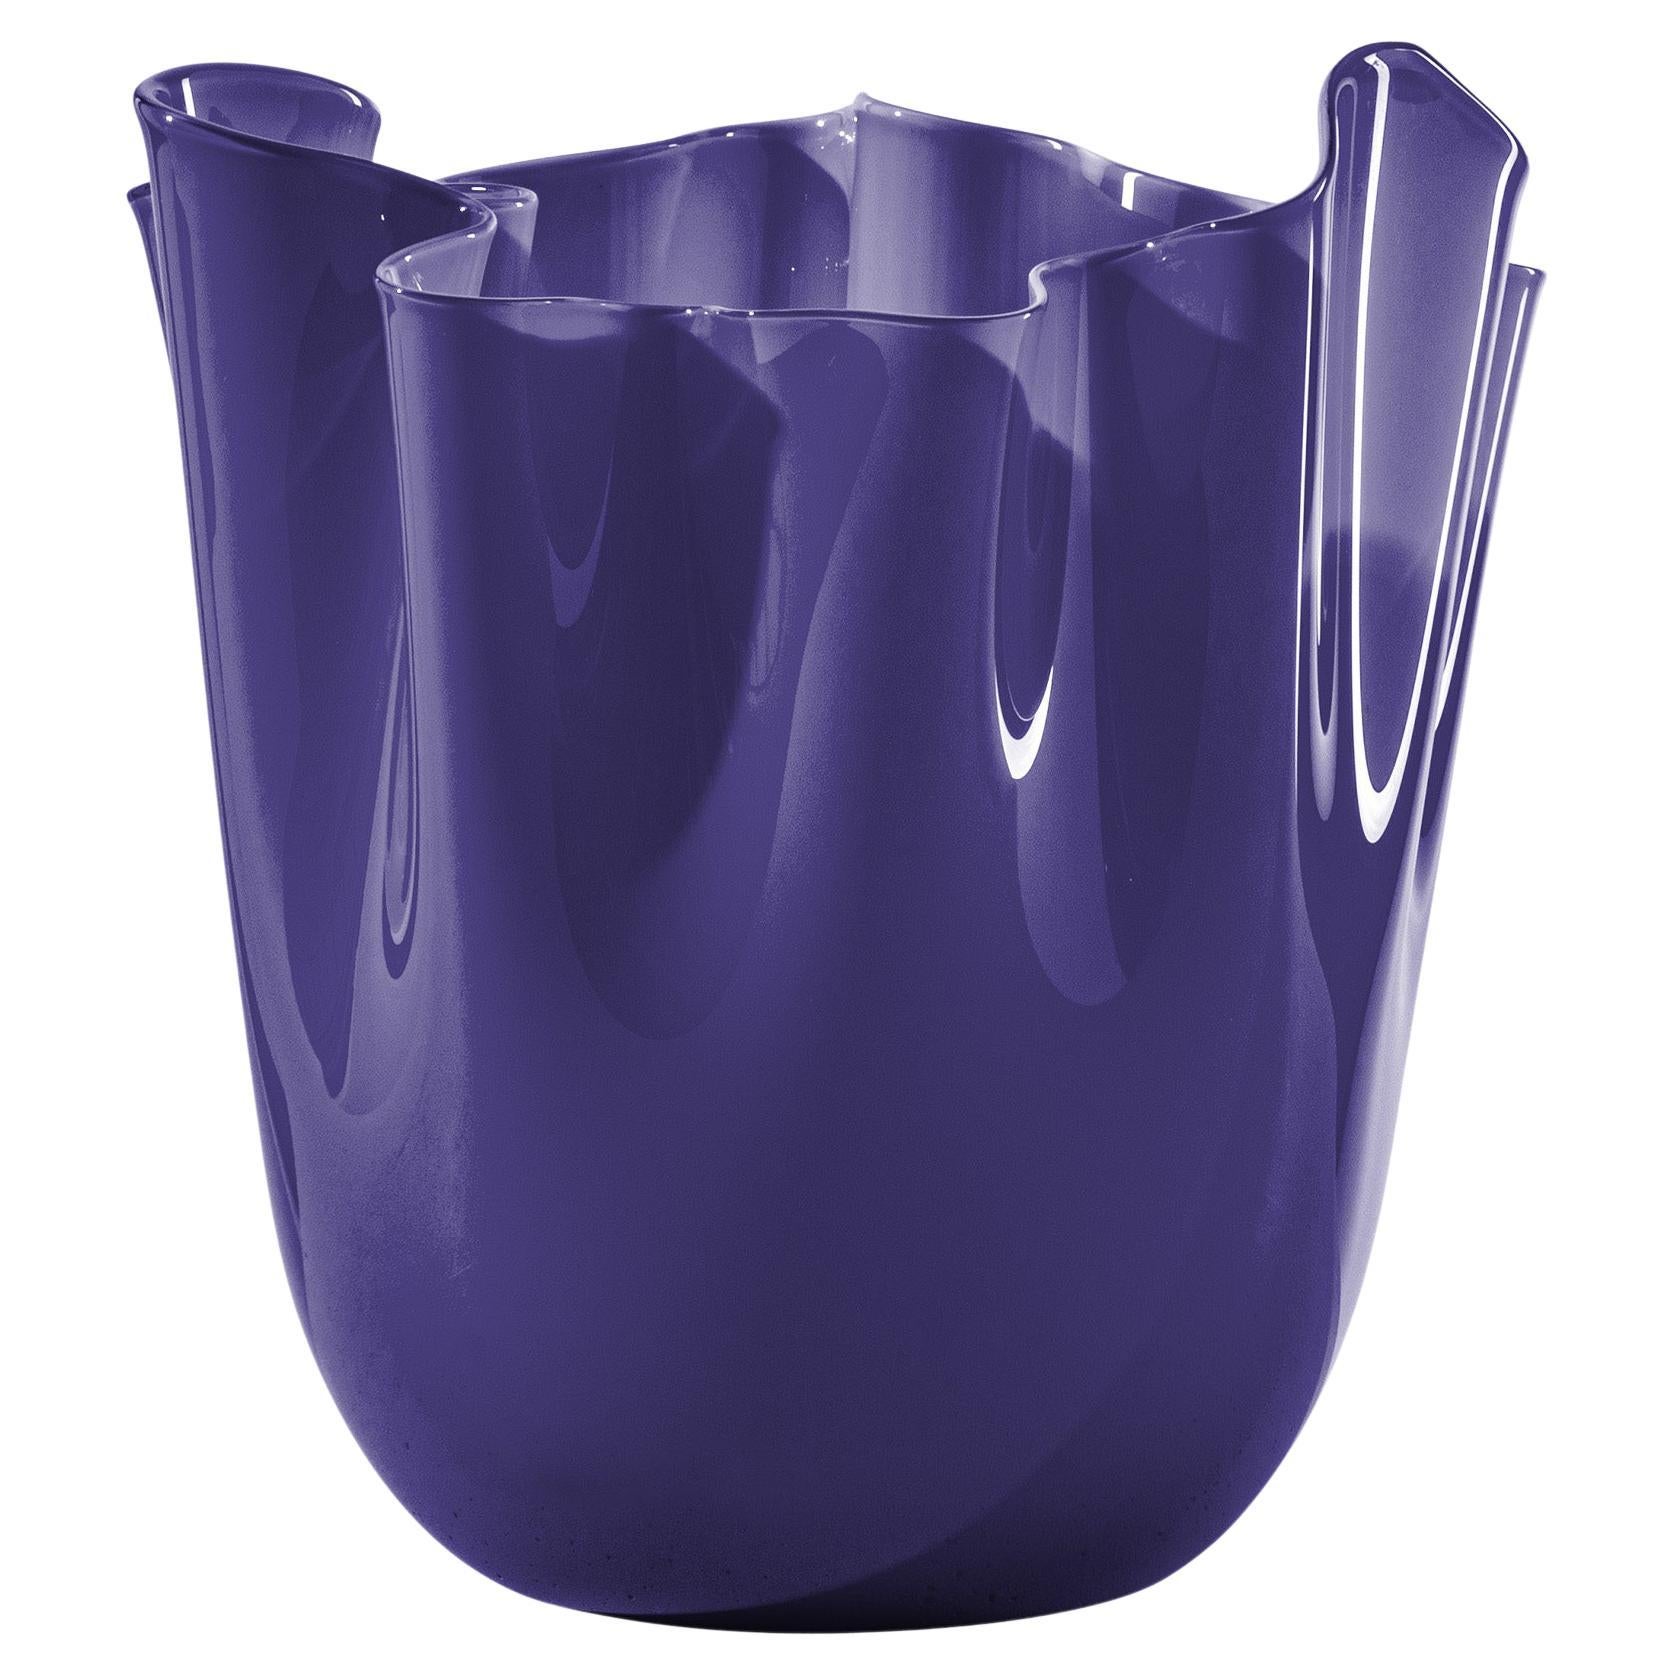 Fazzoletto Opalino Large Glass Vase in Indigo by Fulvio Bianconi and Venini For Sale